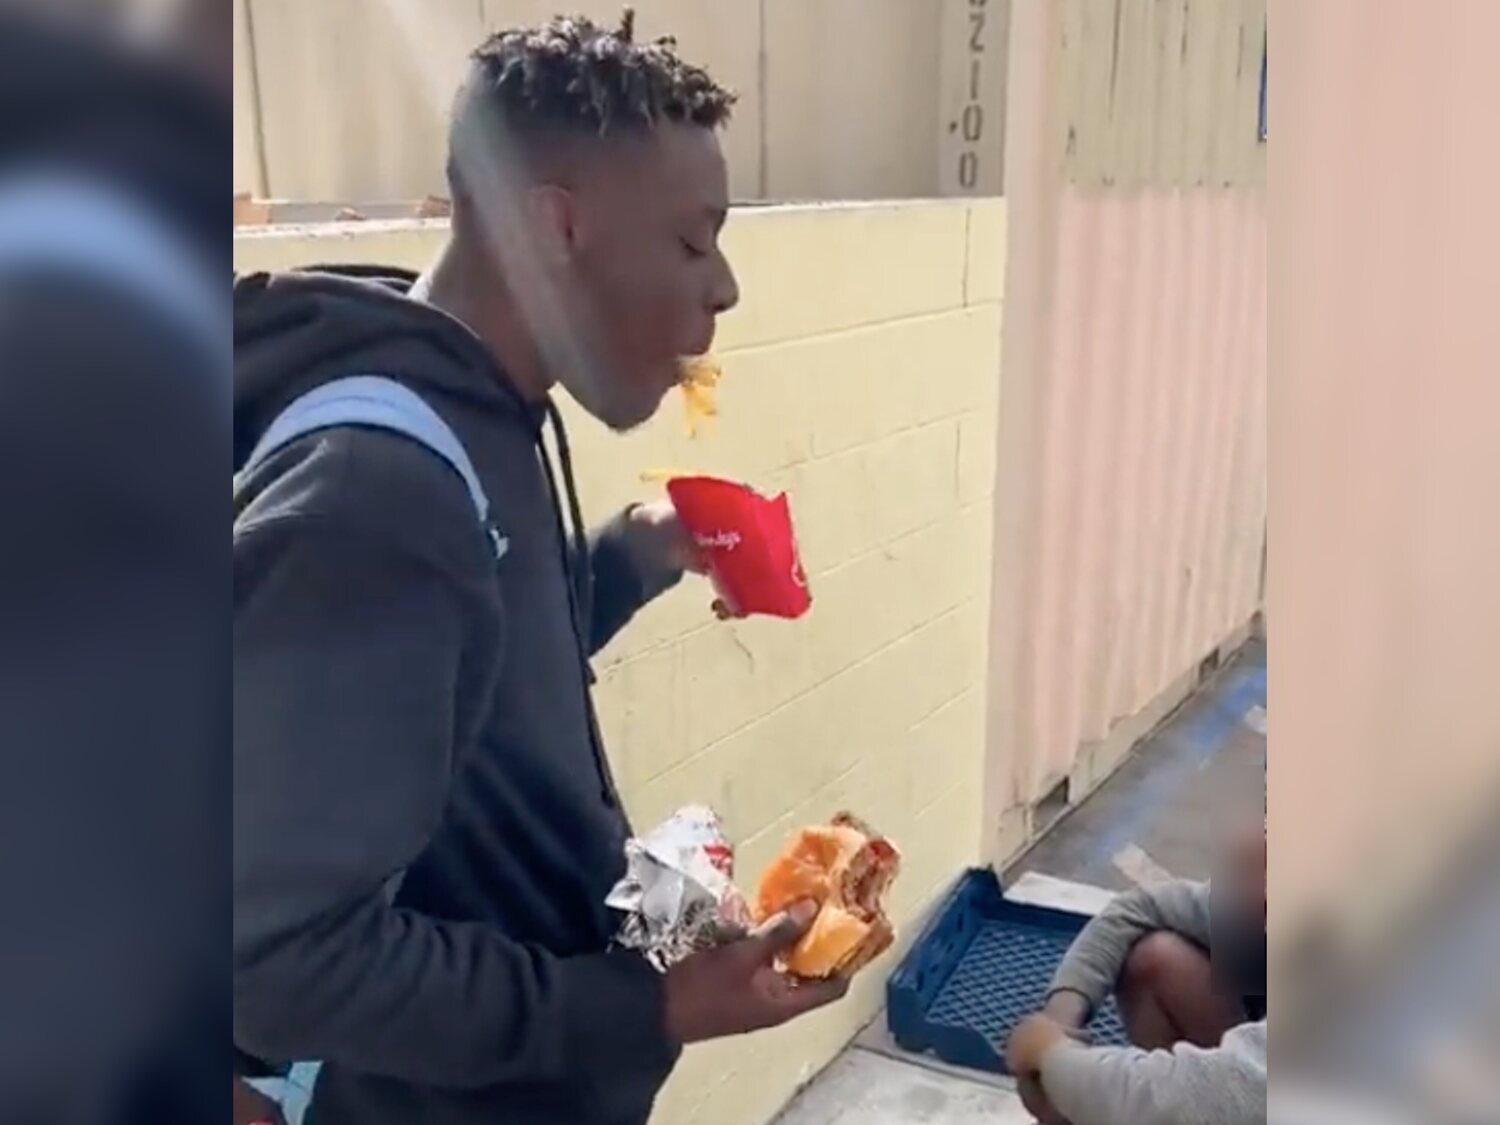 Un youtuber indigna con un vídeo comprando y comiendo delante de una persona sin hogar: "Disfruta de esto"